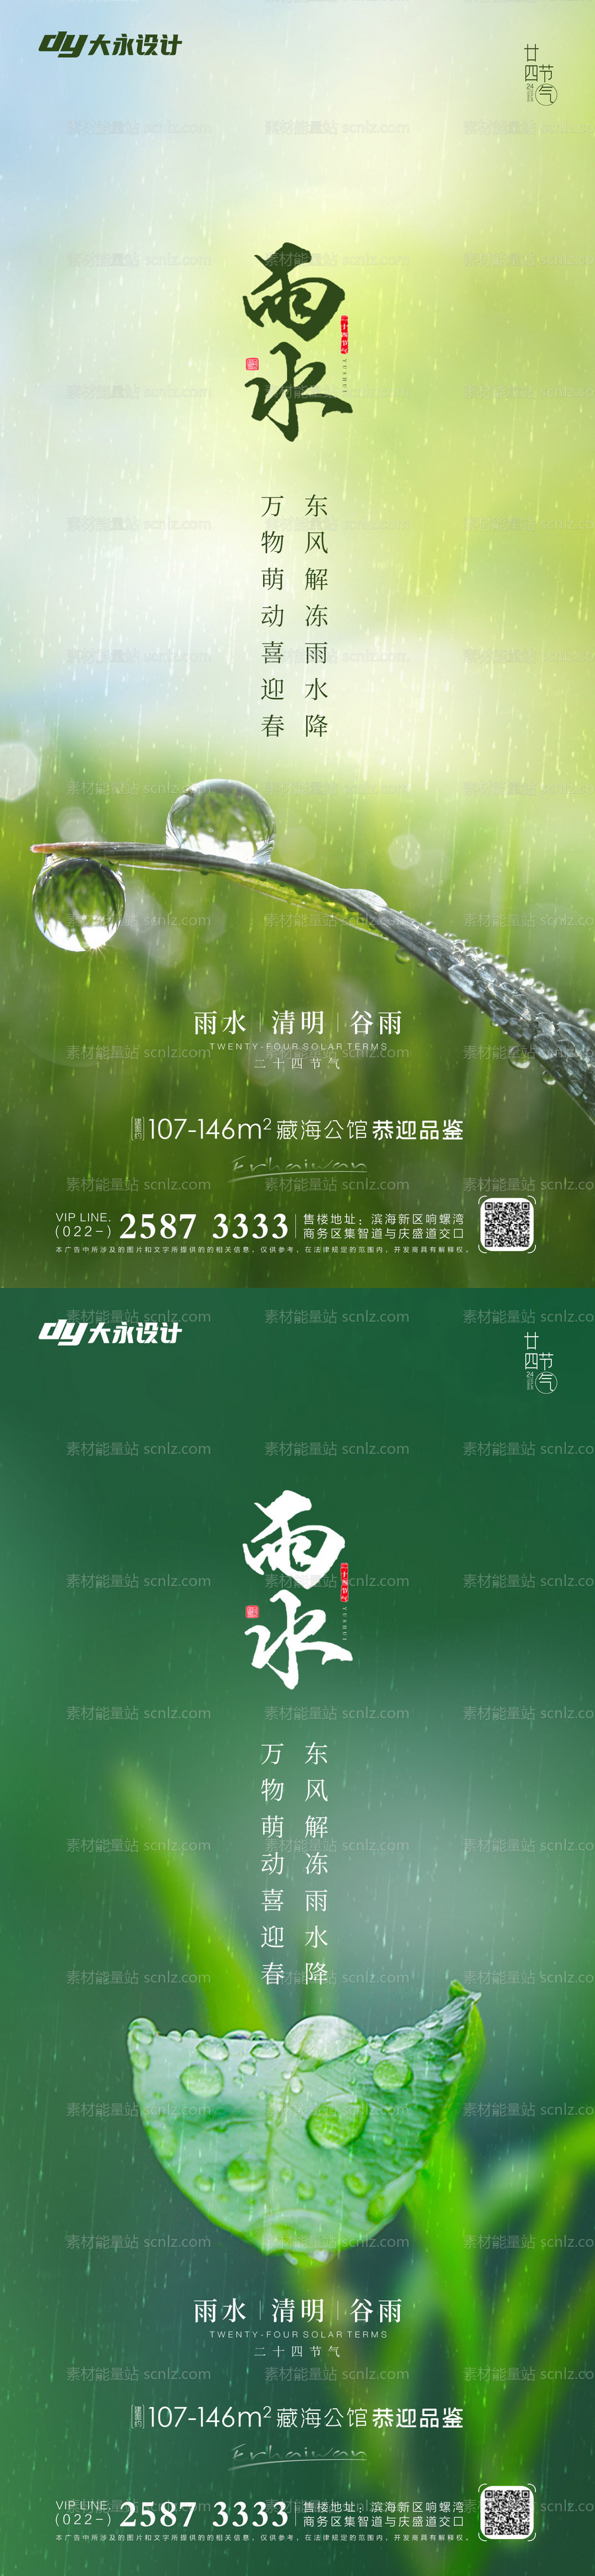 素材能量站-雨水房地产海报